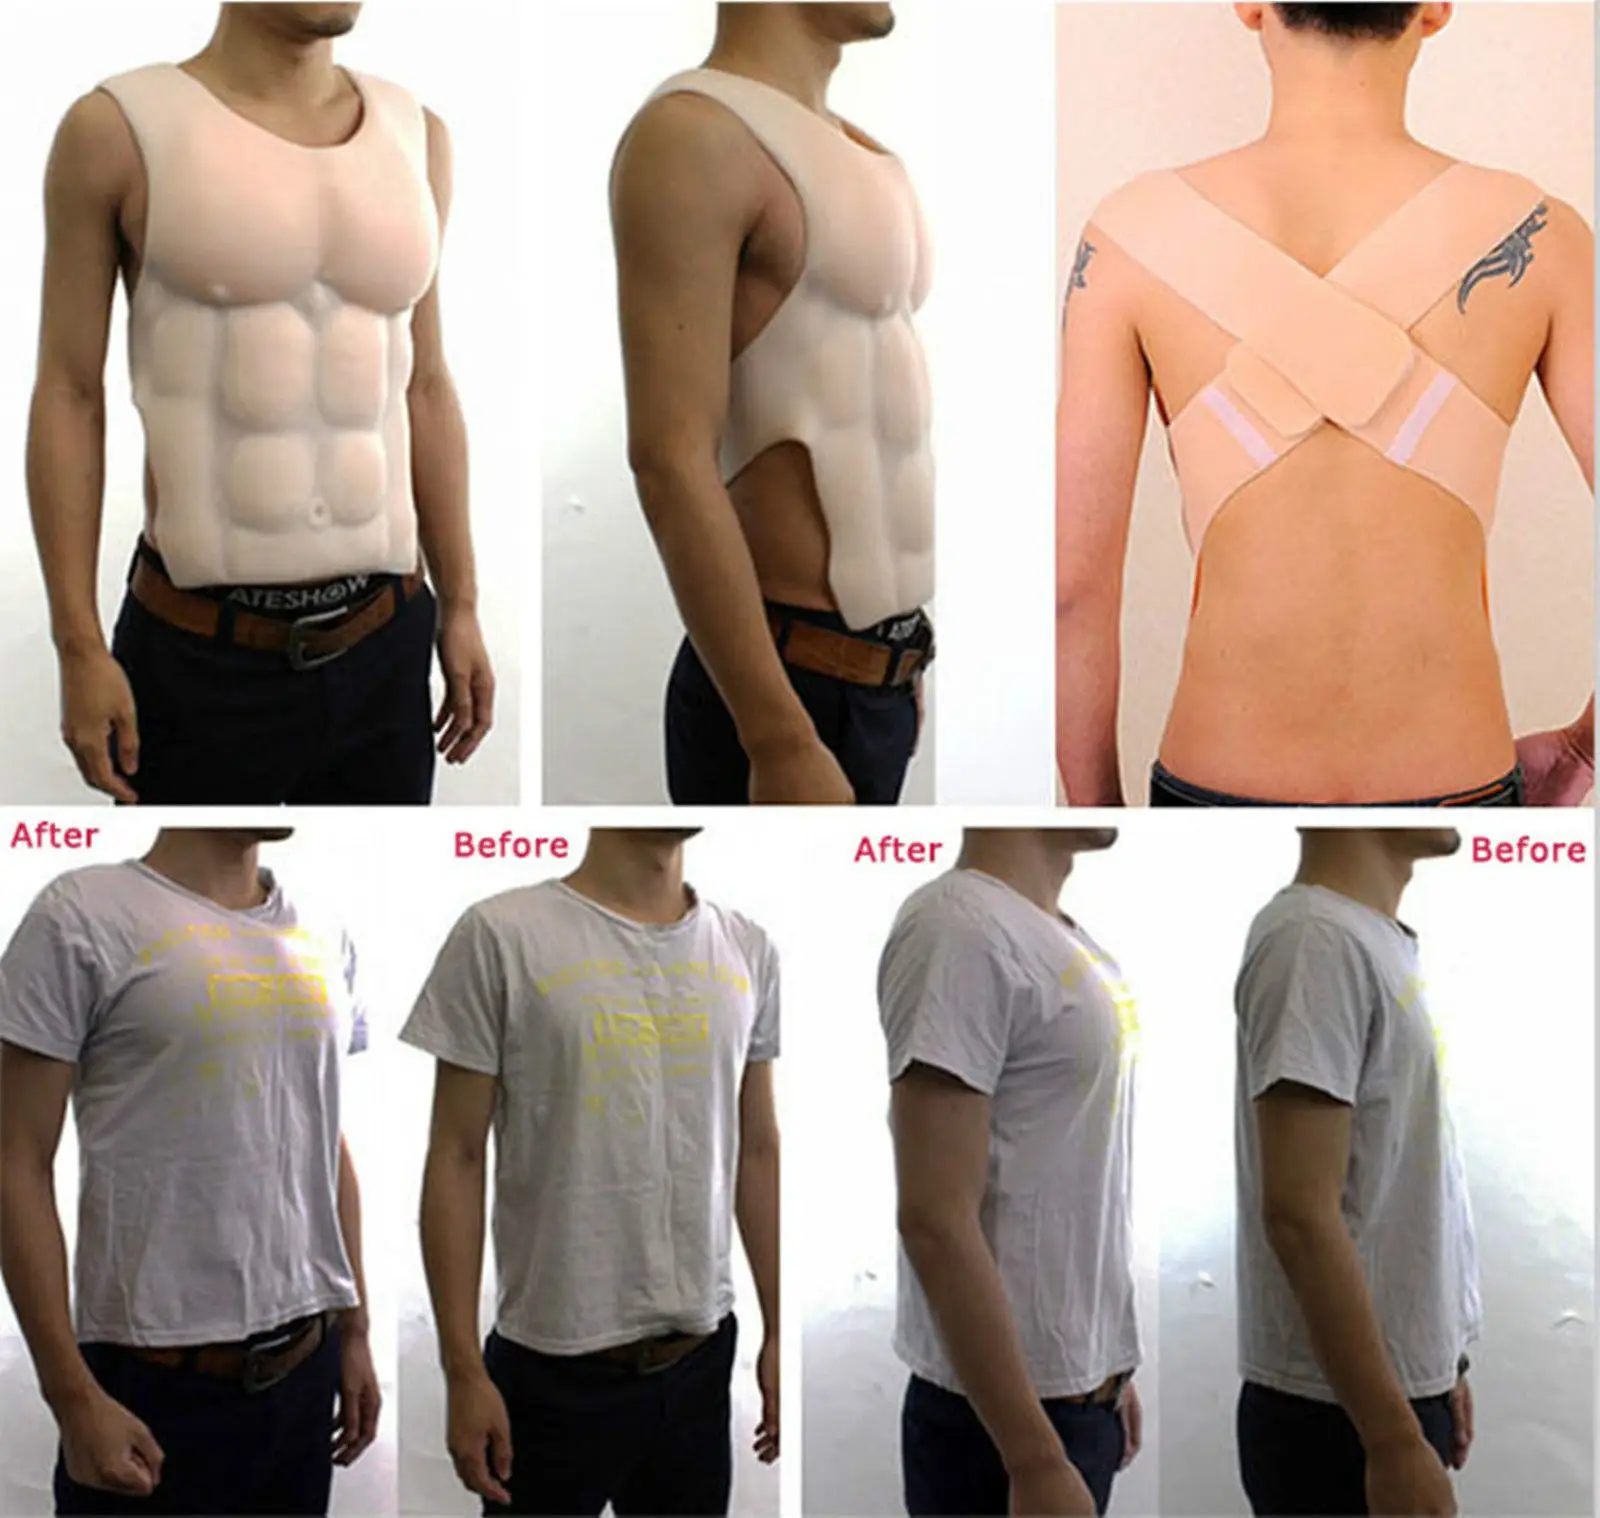 Мускулистая грудь, восемь крепких мышц, Мужская силиконовая искусственная грудь, мускулаторная мышца, косплей, Трансвестит, искусственное Корректирующее белье